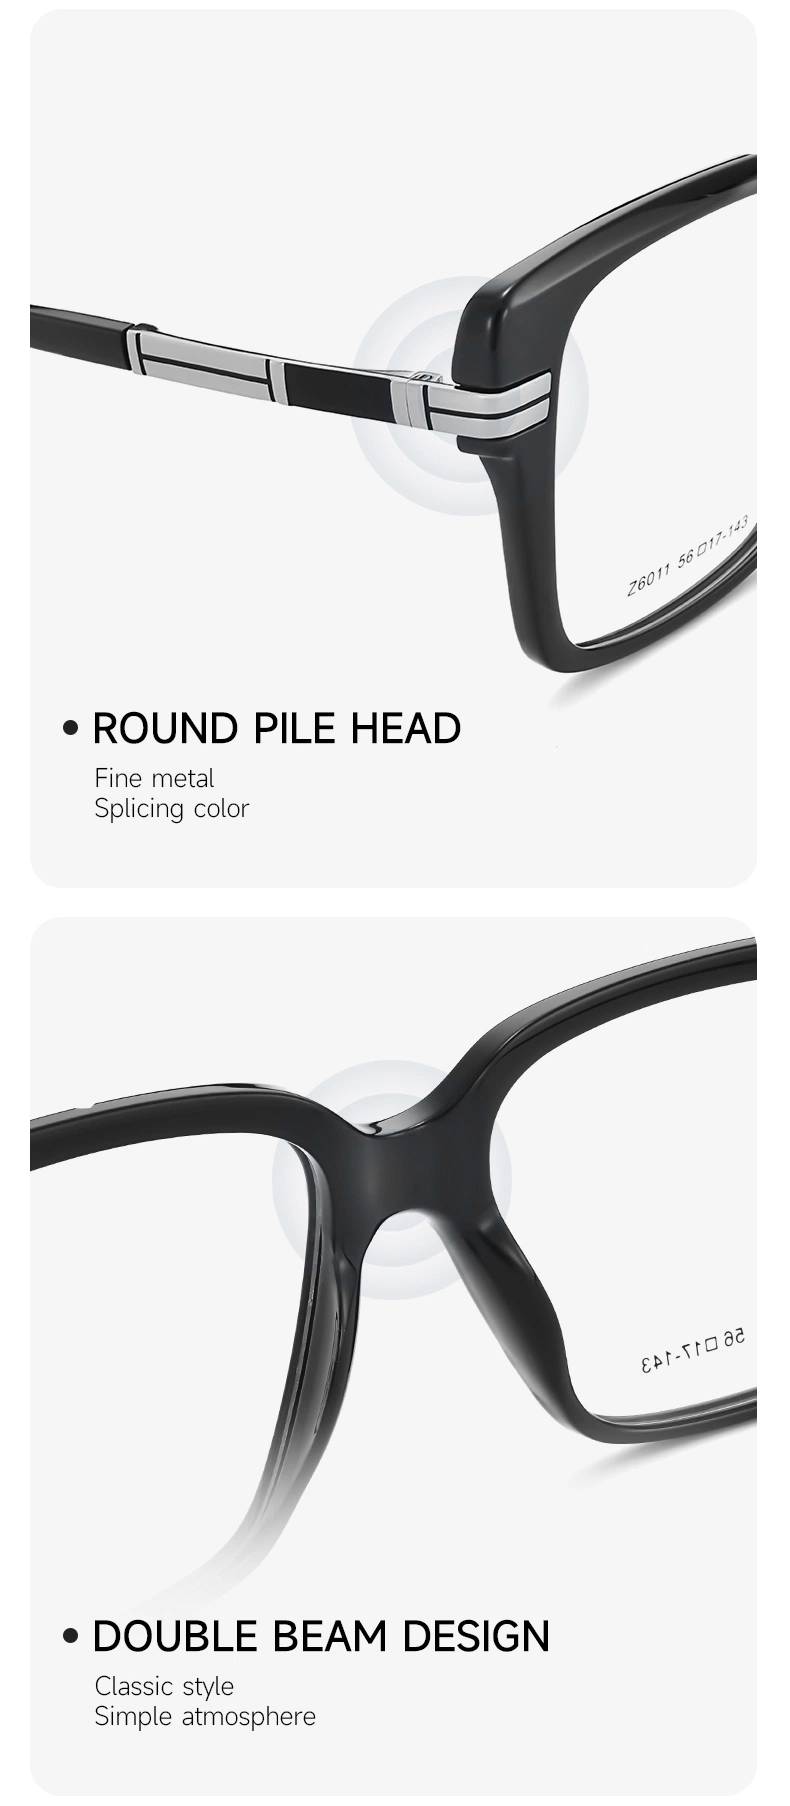 Fashionable Designer Male Eyeglasses Optical Frames Glasses for Men